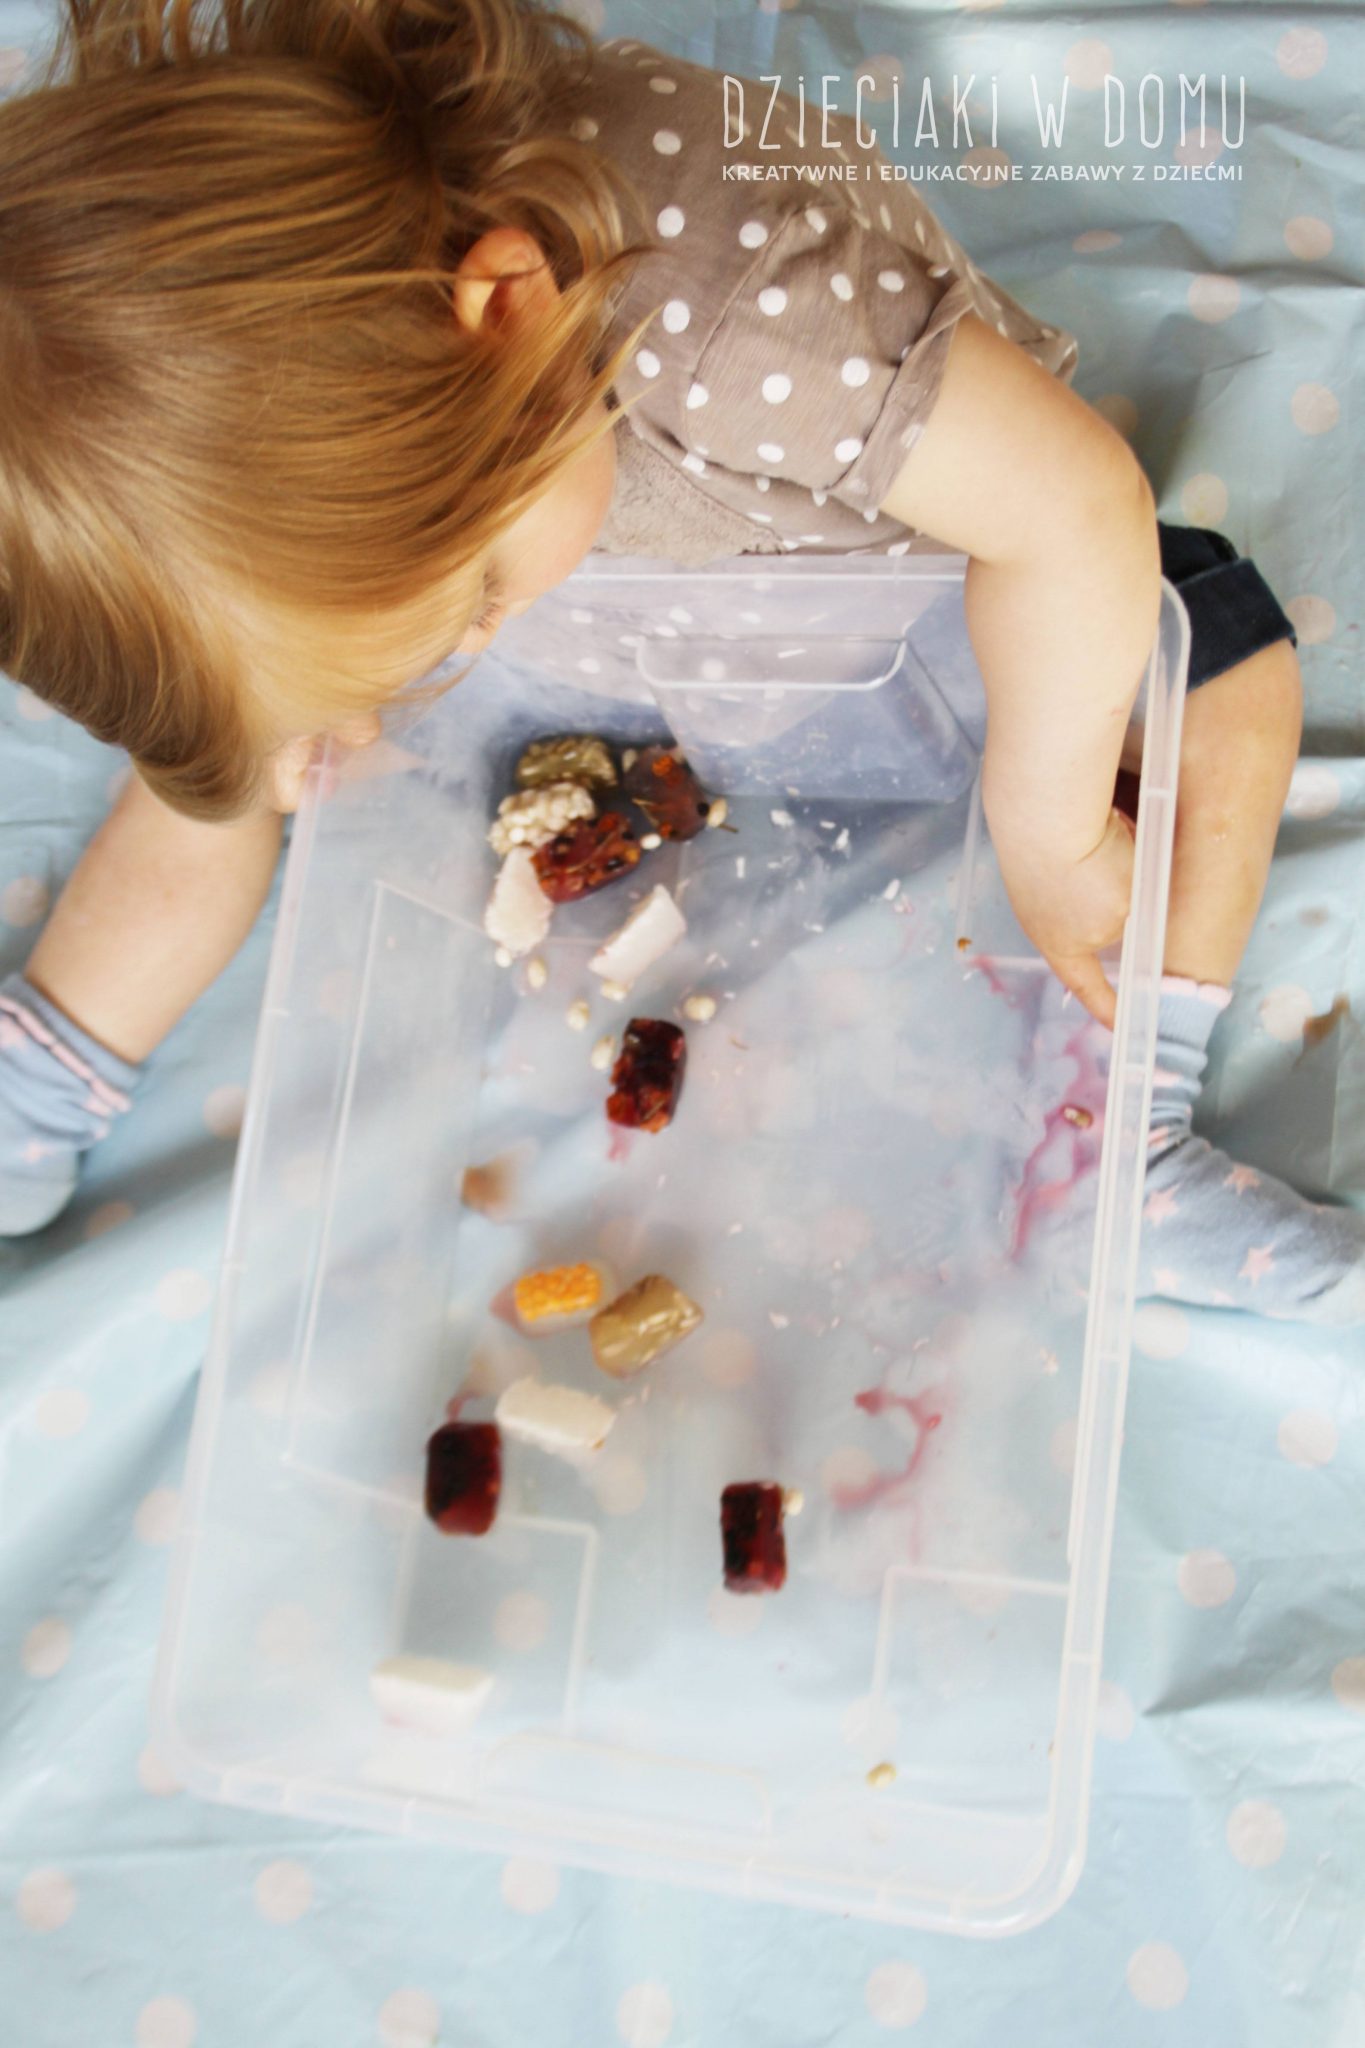 Lód pełen kolorów, smaku i faktur - zabawa sensoryczna dla maluchów